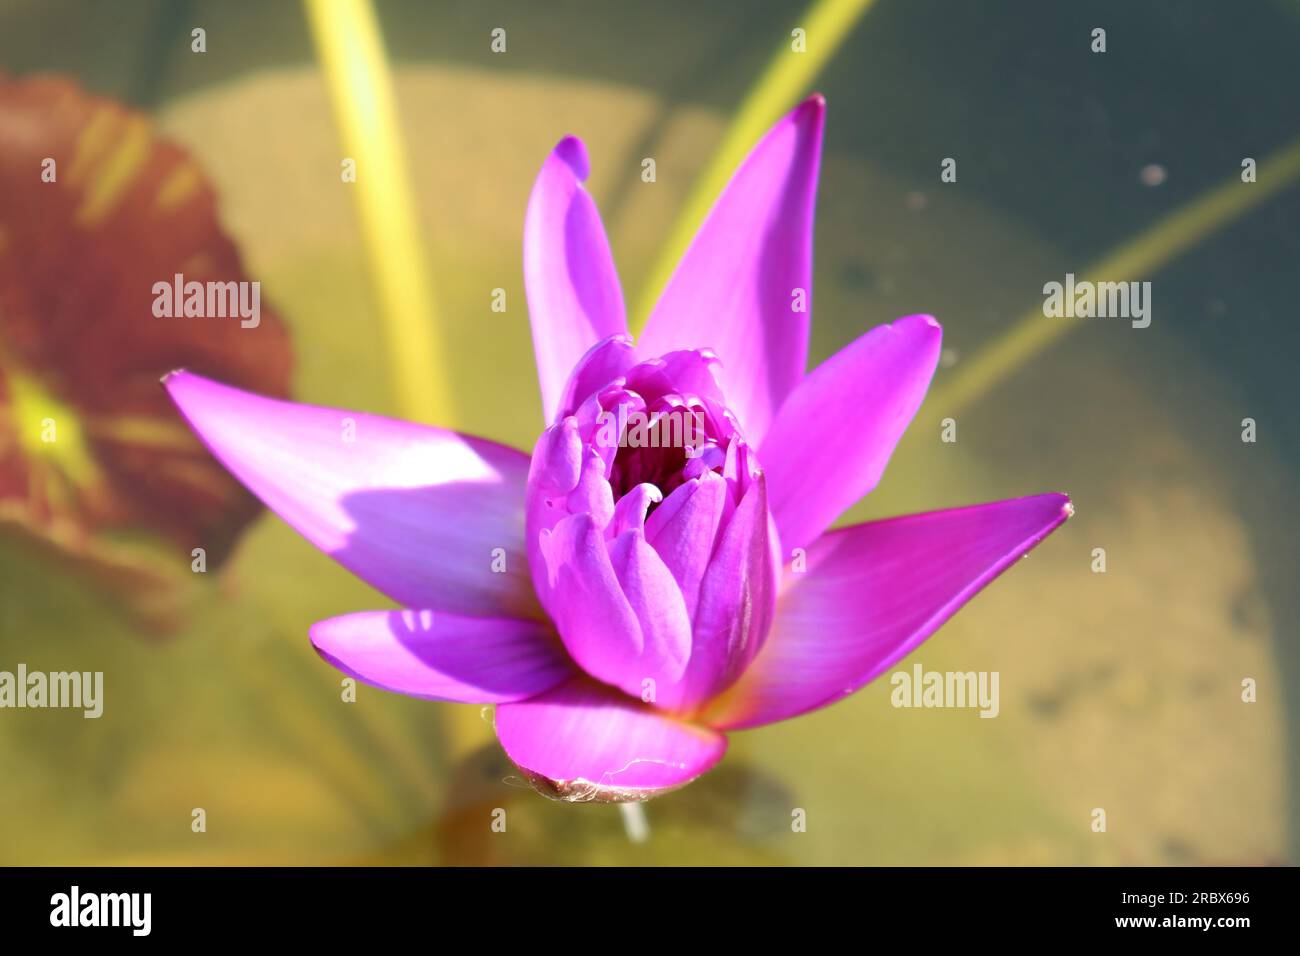 Nahaufnahme einer wunderschönen lila Wasserlilie, die im Sonnenlicht blüht Stockfoto